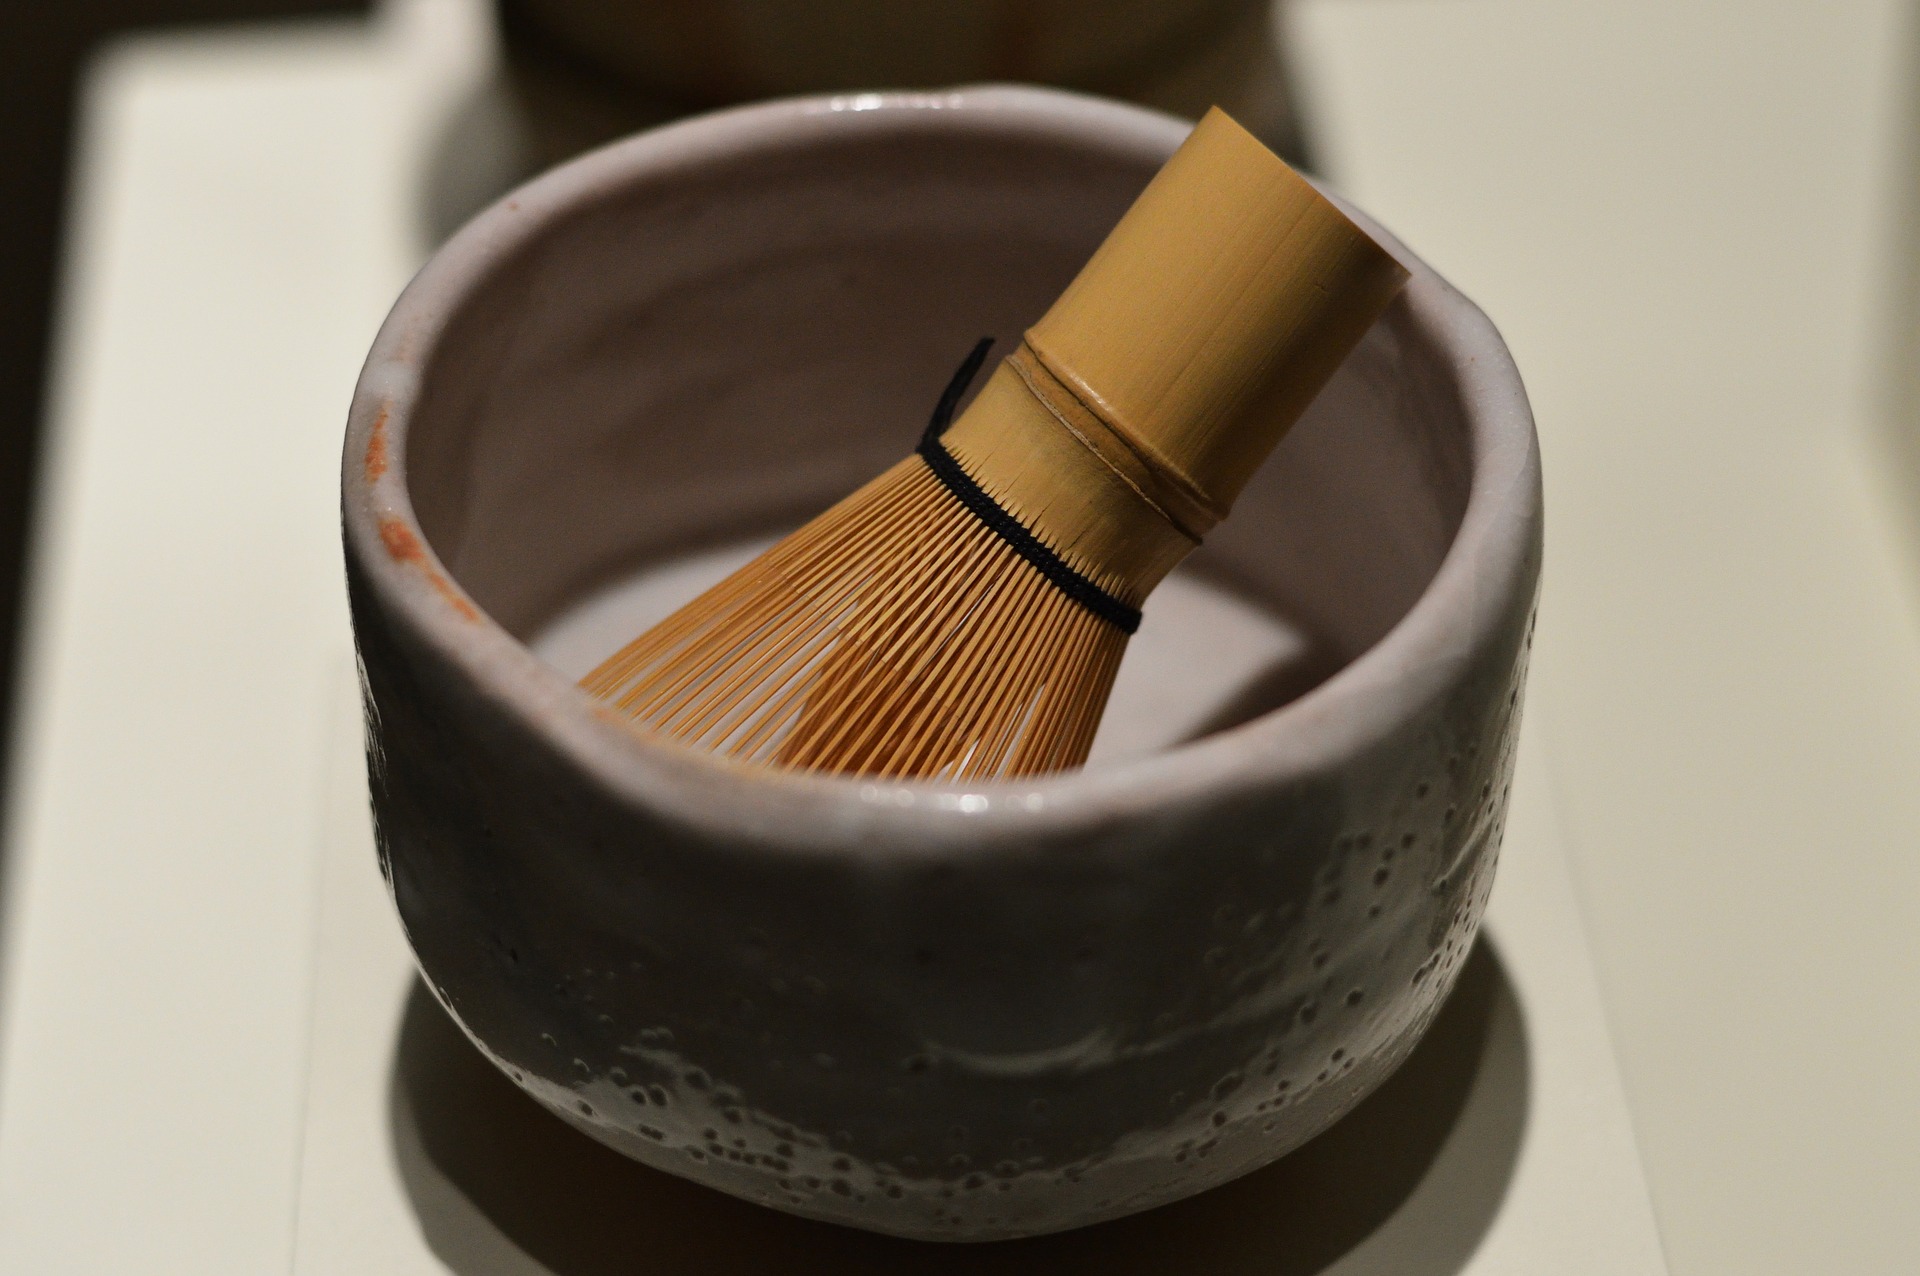 Chawan es el bowl o cuenco en donde se prepara la matcha y chasen, batidor de bambú para las ceremonias de té.